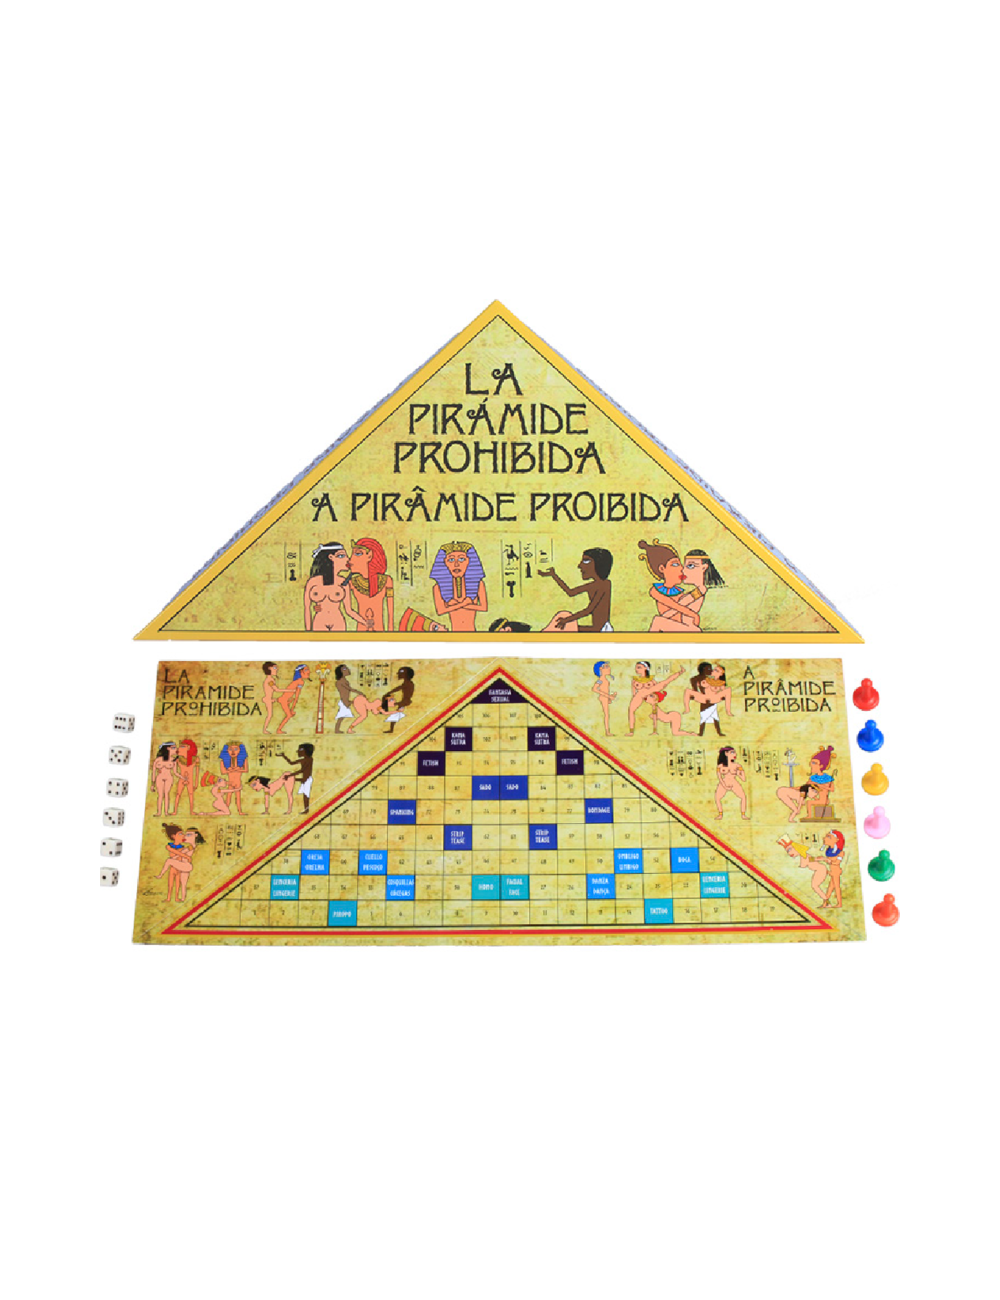 Secretplay juego la piramide prohibida (es/pt)